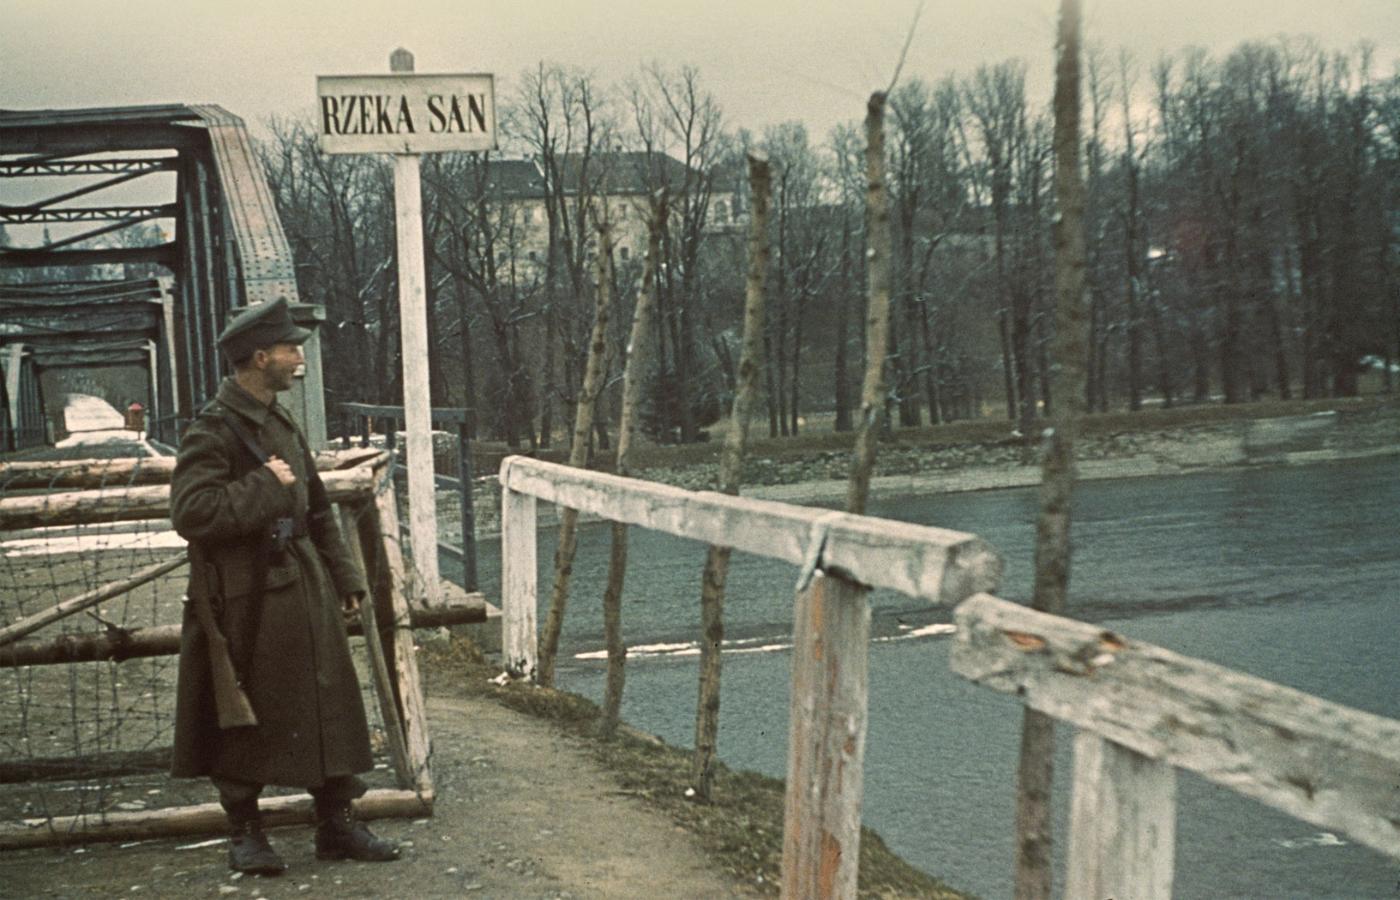 Niemiecki posterunek przy moście na Sanie w Przemyślu, 1941 r. Do czerwca 1941 r. rzeką biegła granica między III Rzeszą i ZSRR, zarazem według ukraińskich nacjonalistów właśnie na Sanie powinna opierać się zachodnia granica Ukrainy („Lachy za San”).